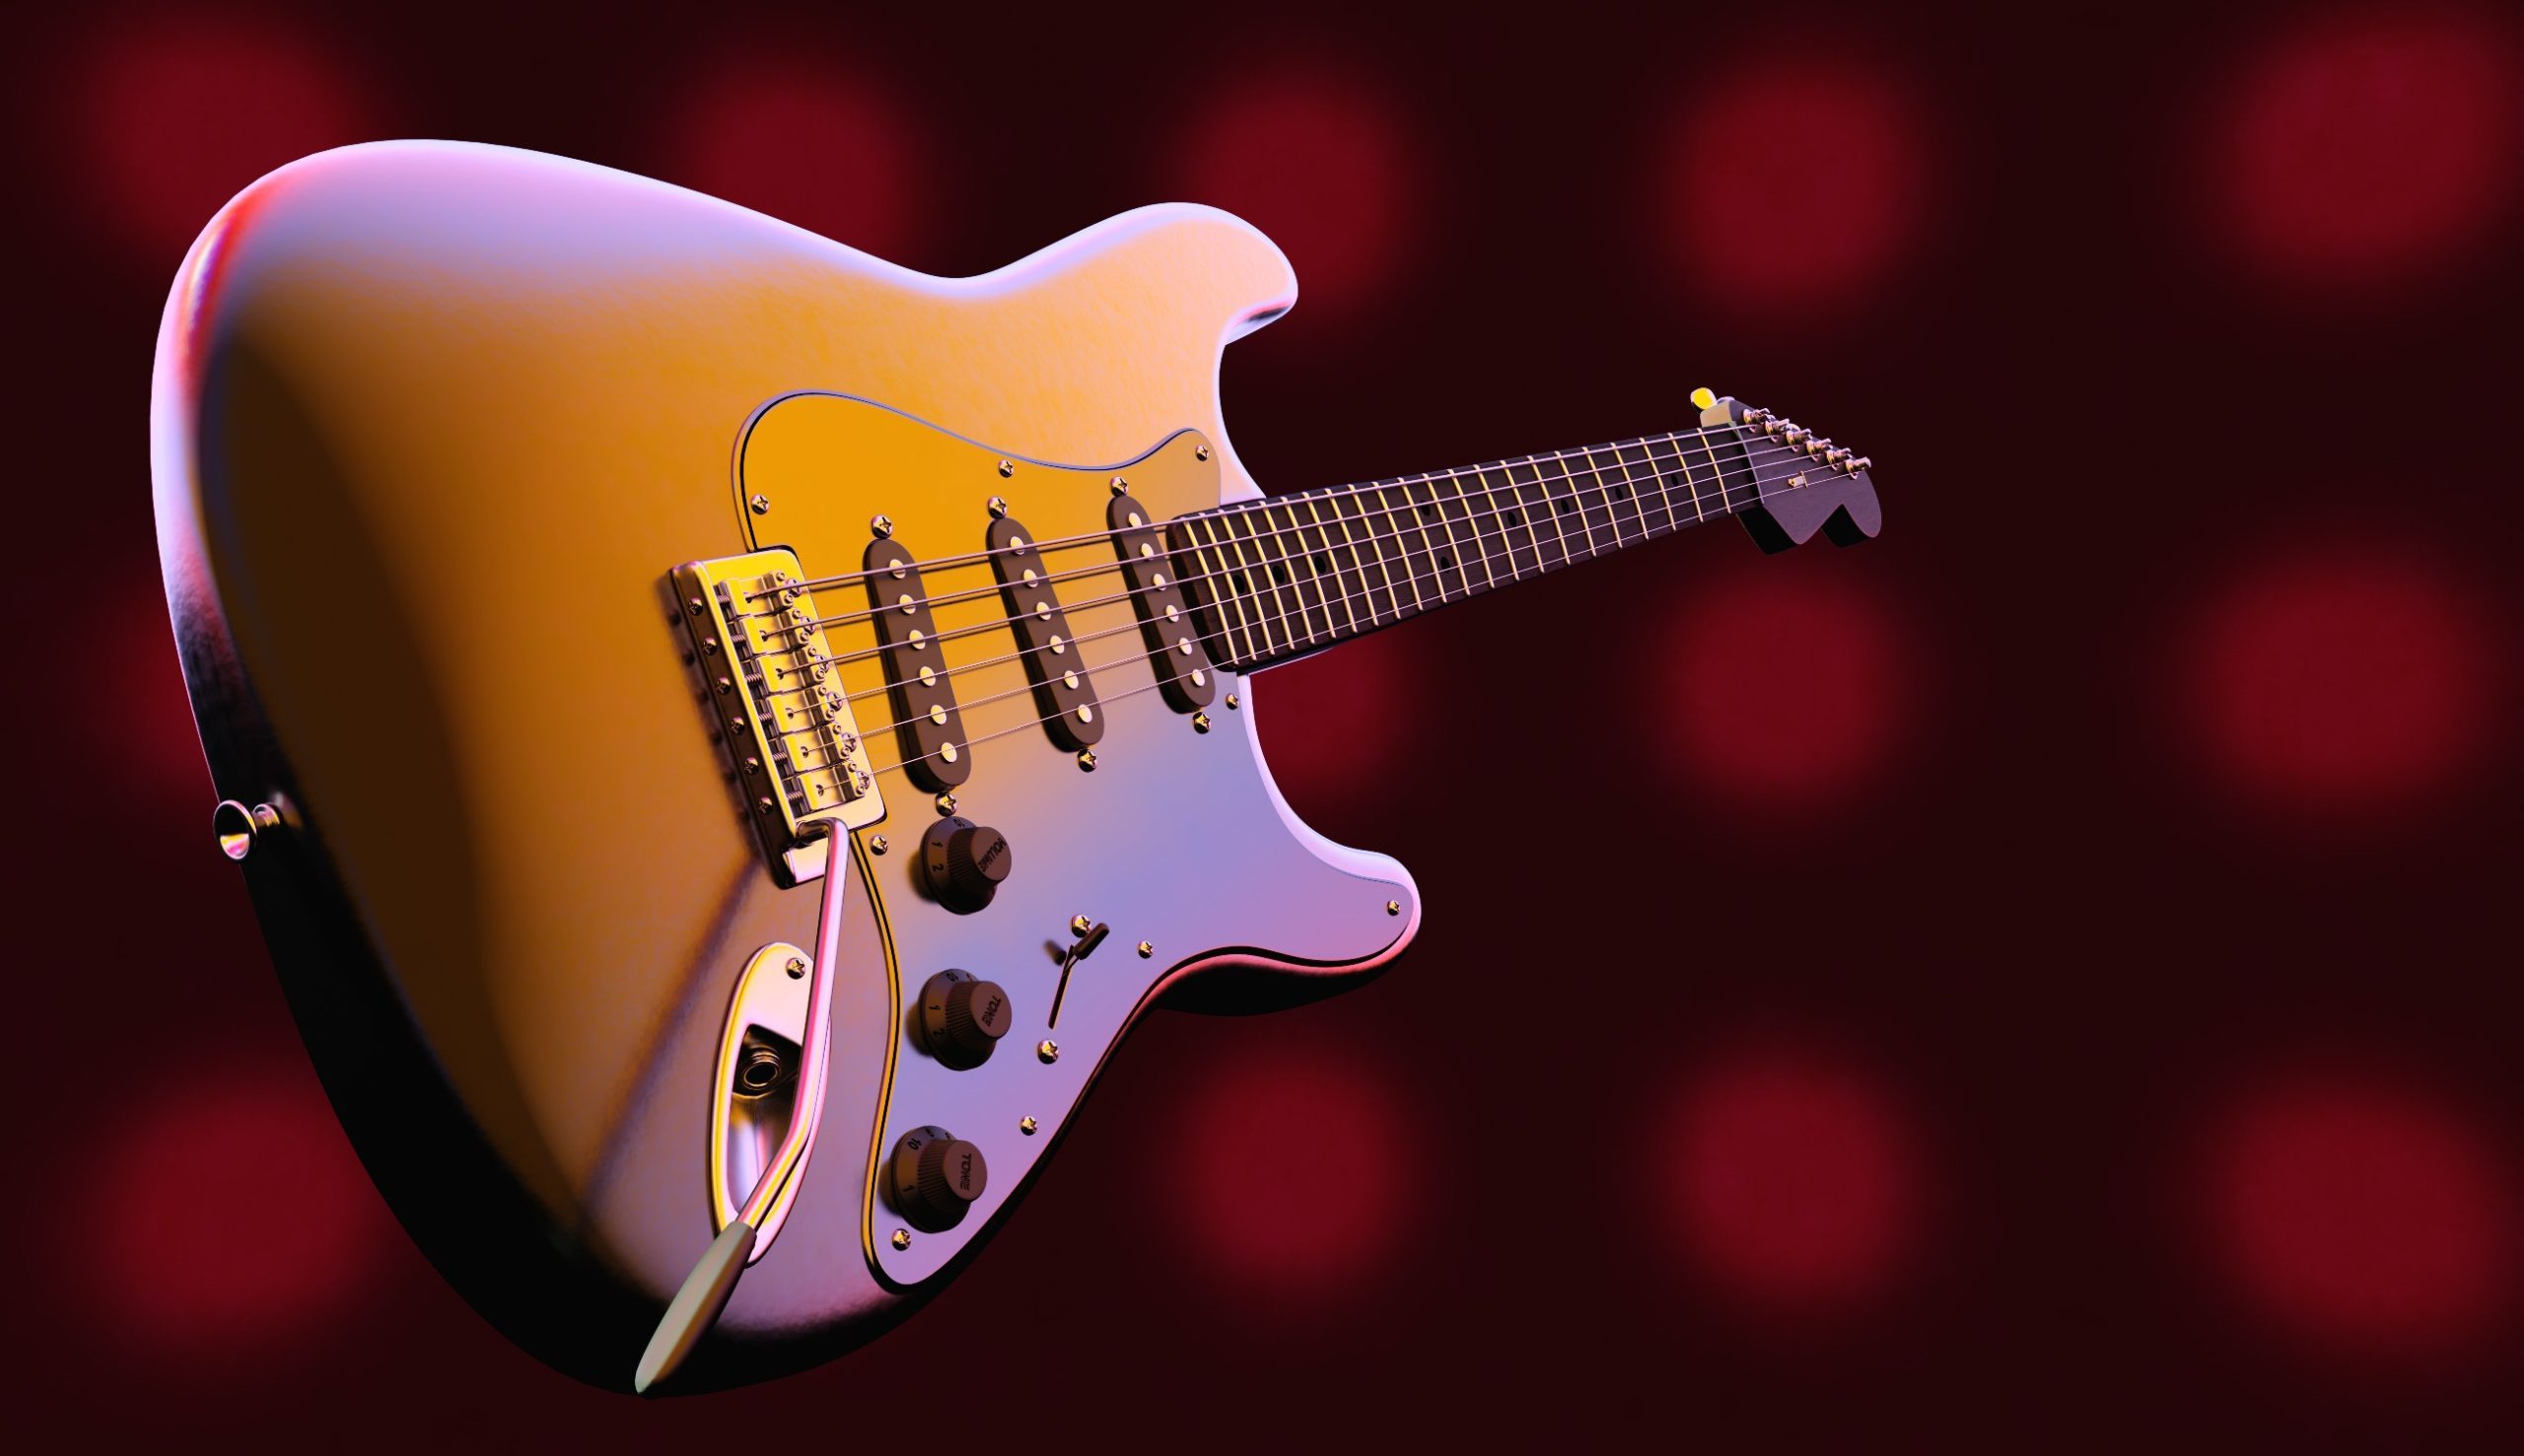 electric guitar wallpaper,guitar,string instrument,string instrument,musical instrument,electric guitar